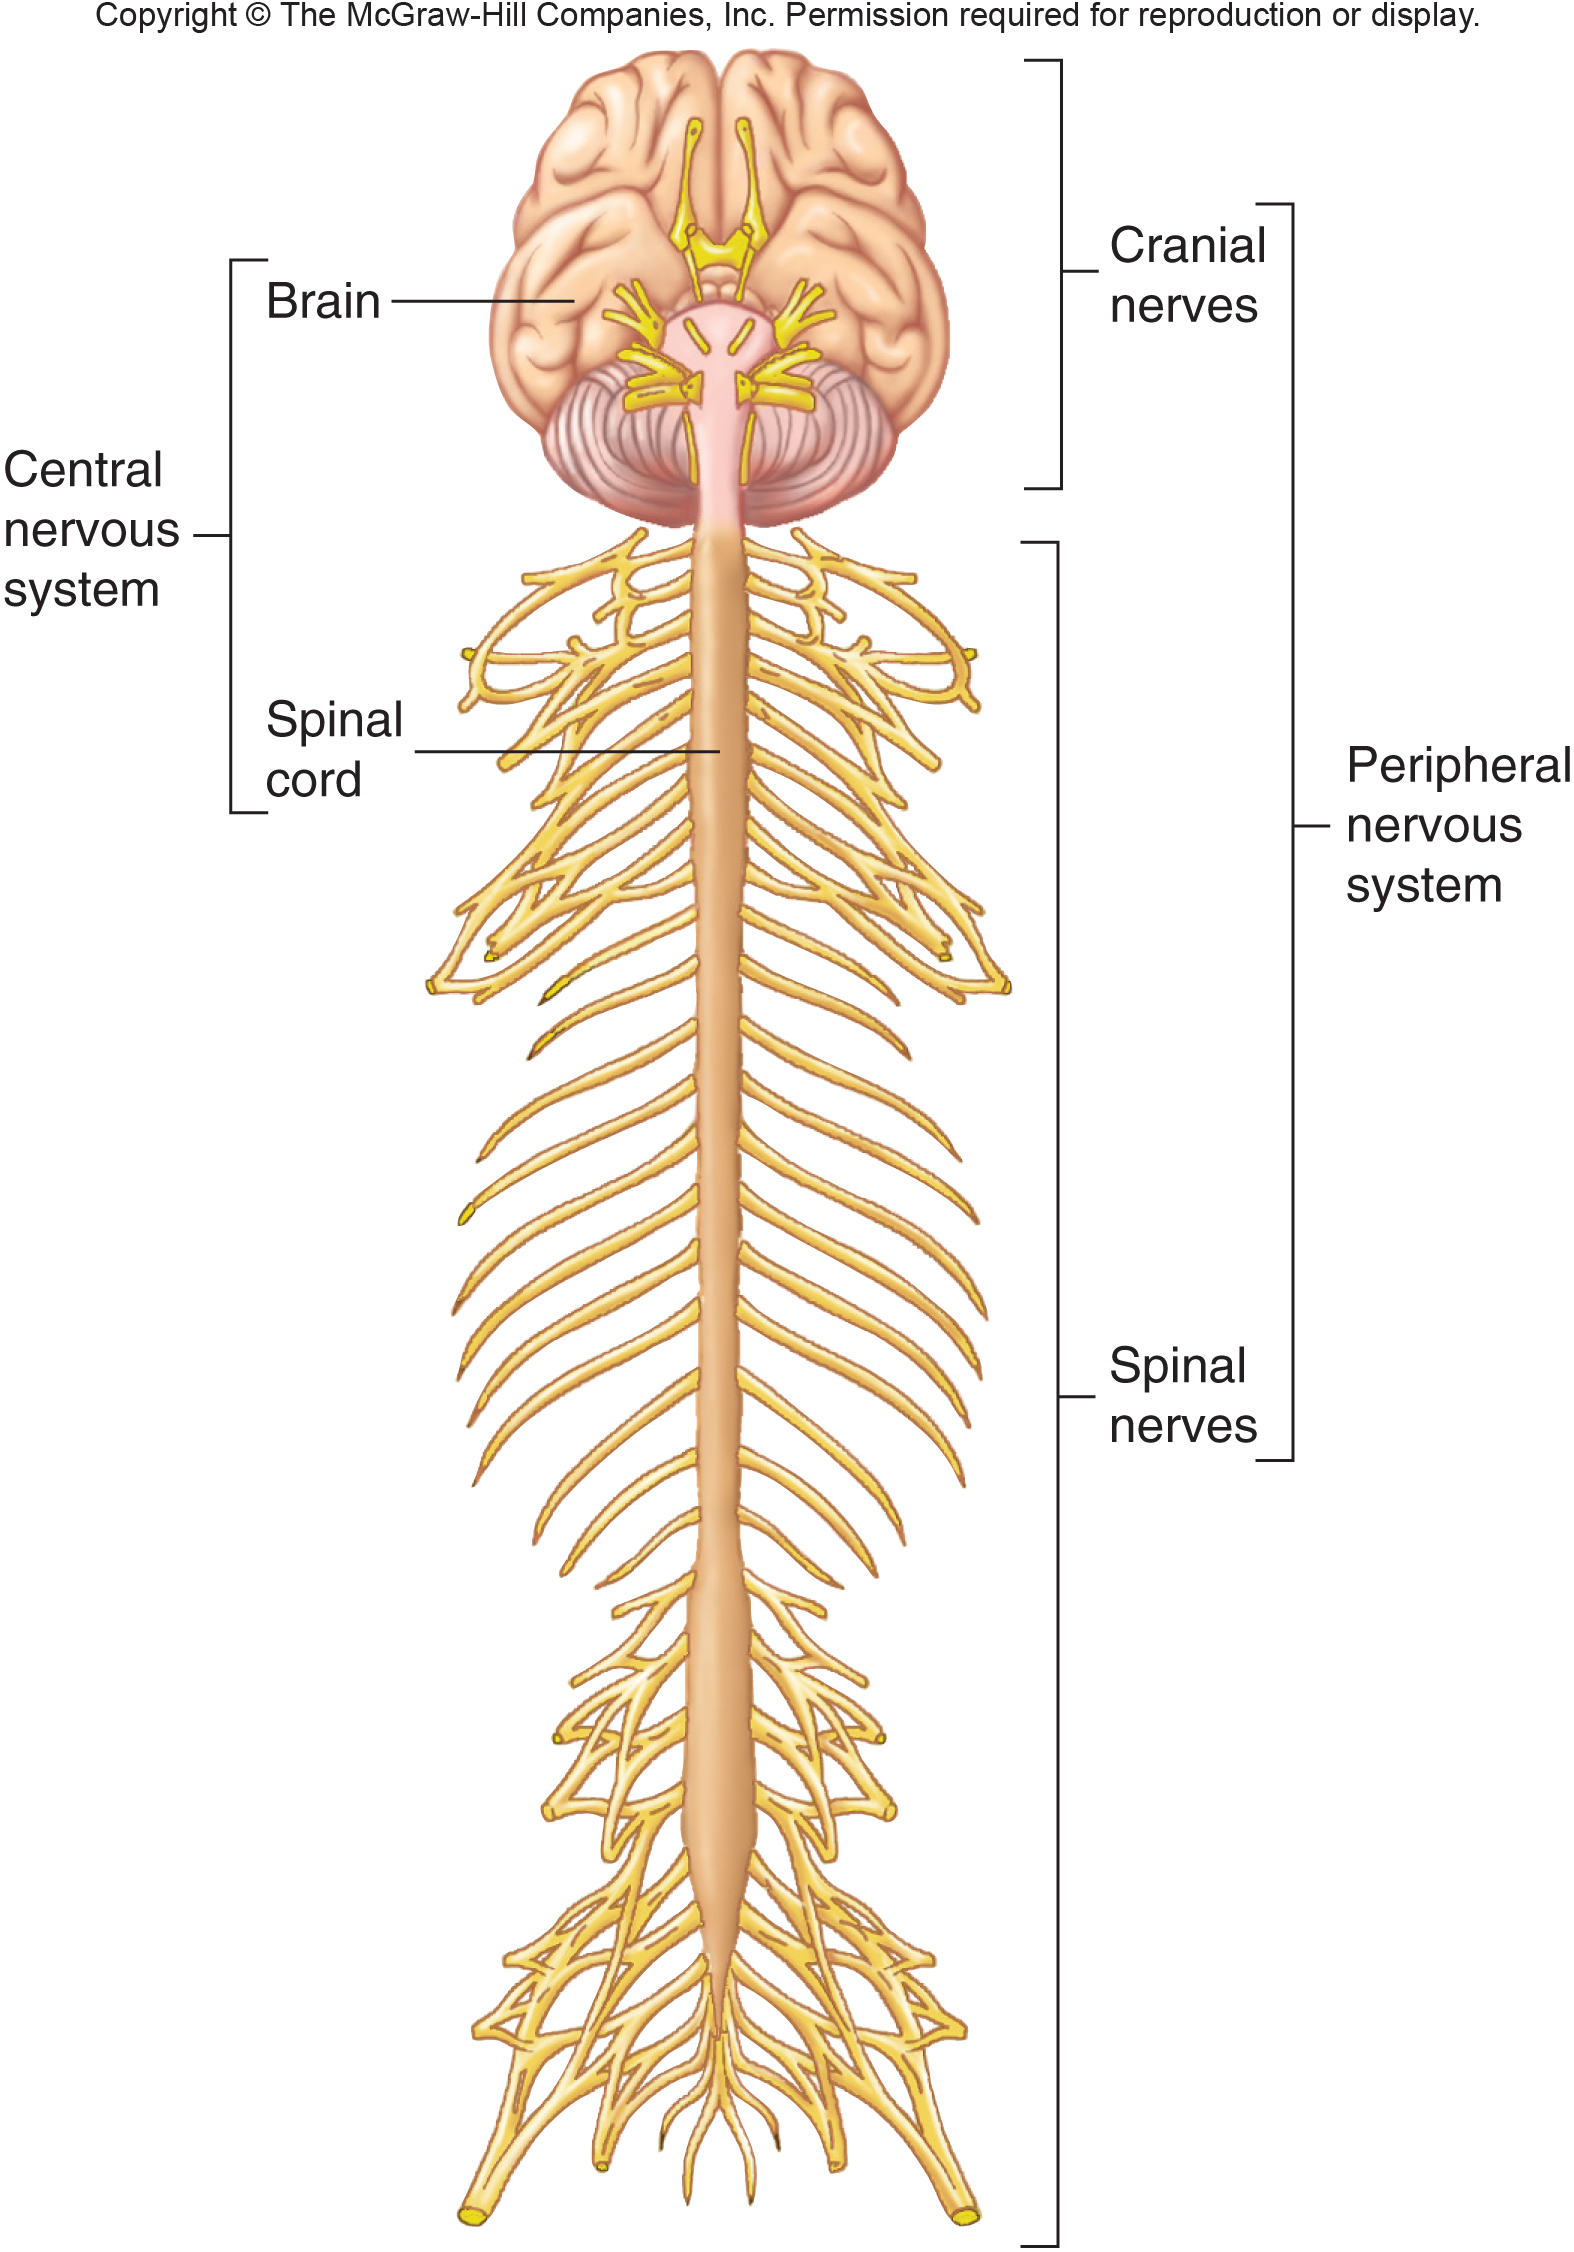 Nervous System Diagram Unlabeled 21 Children With Nervous System Images